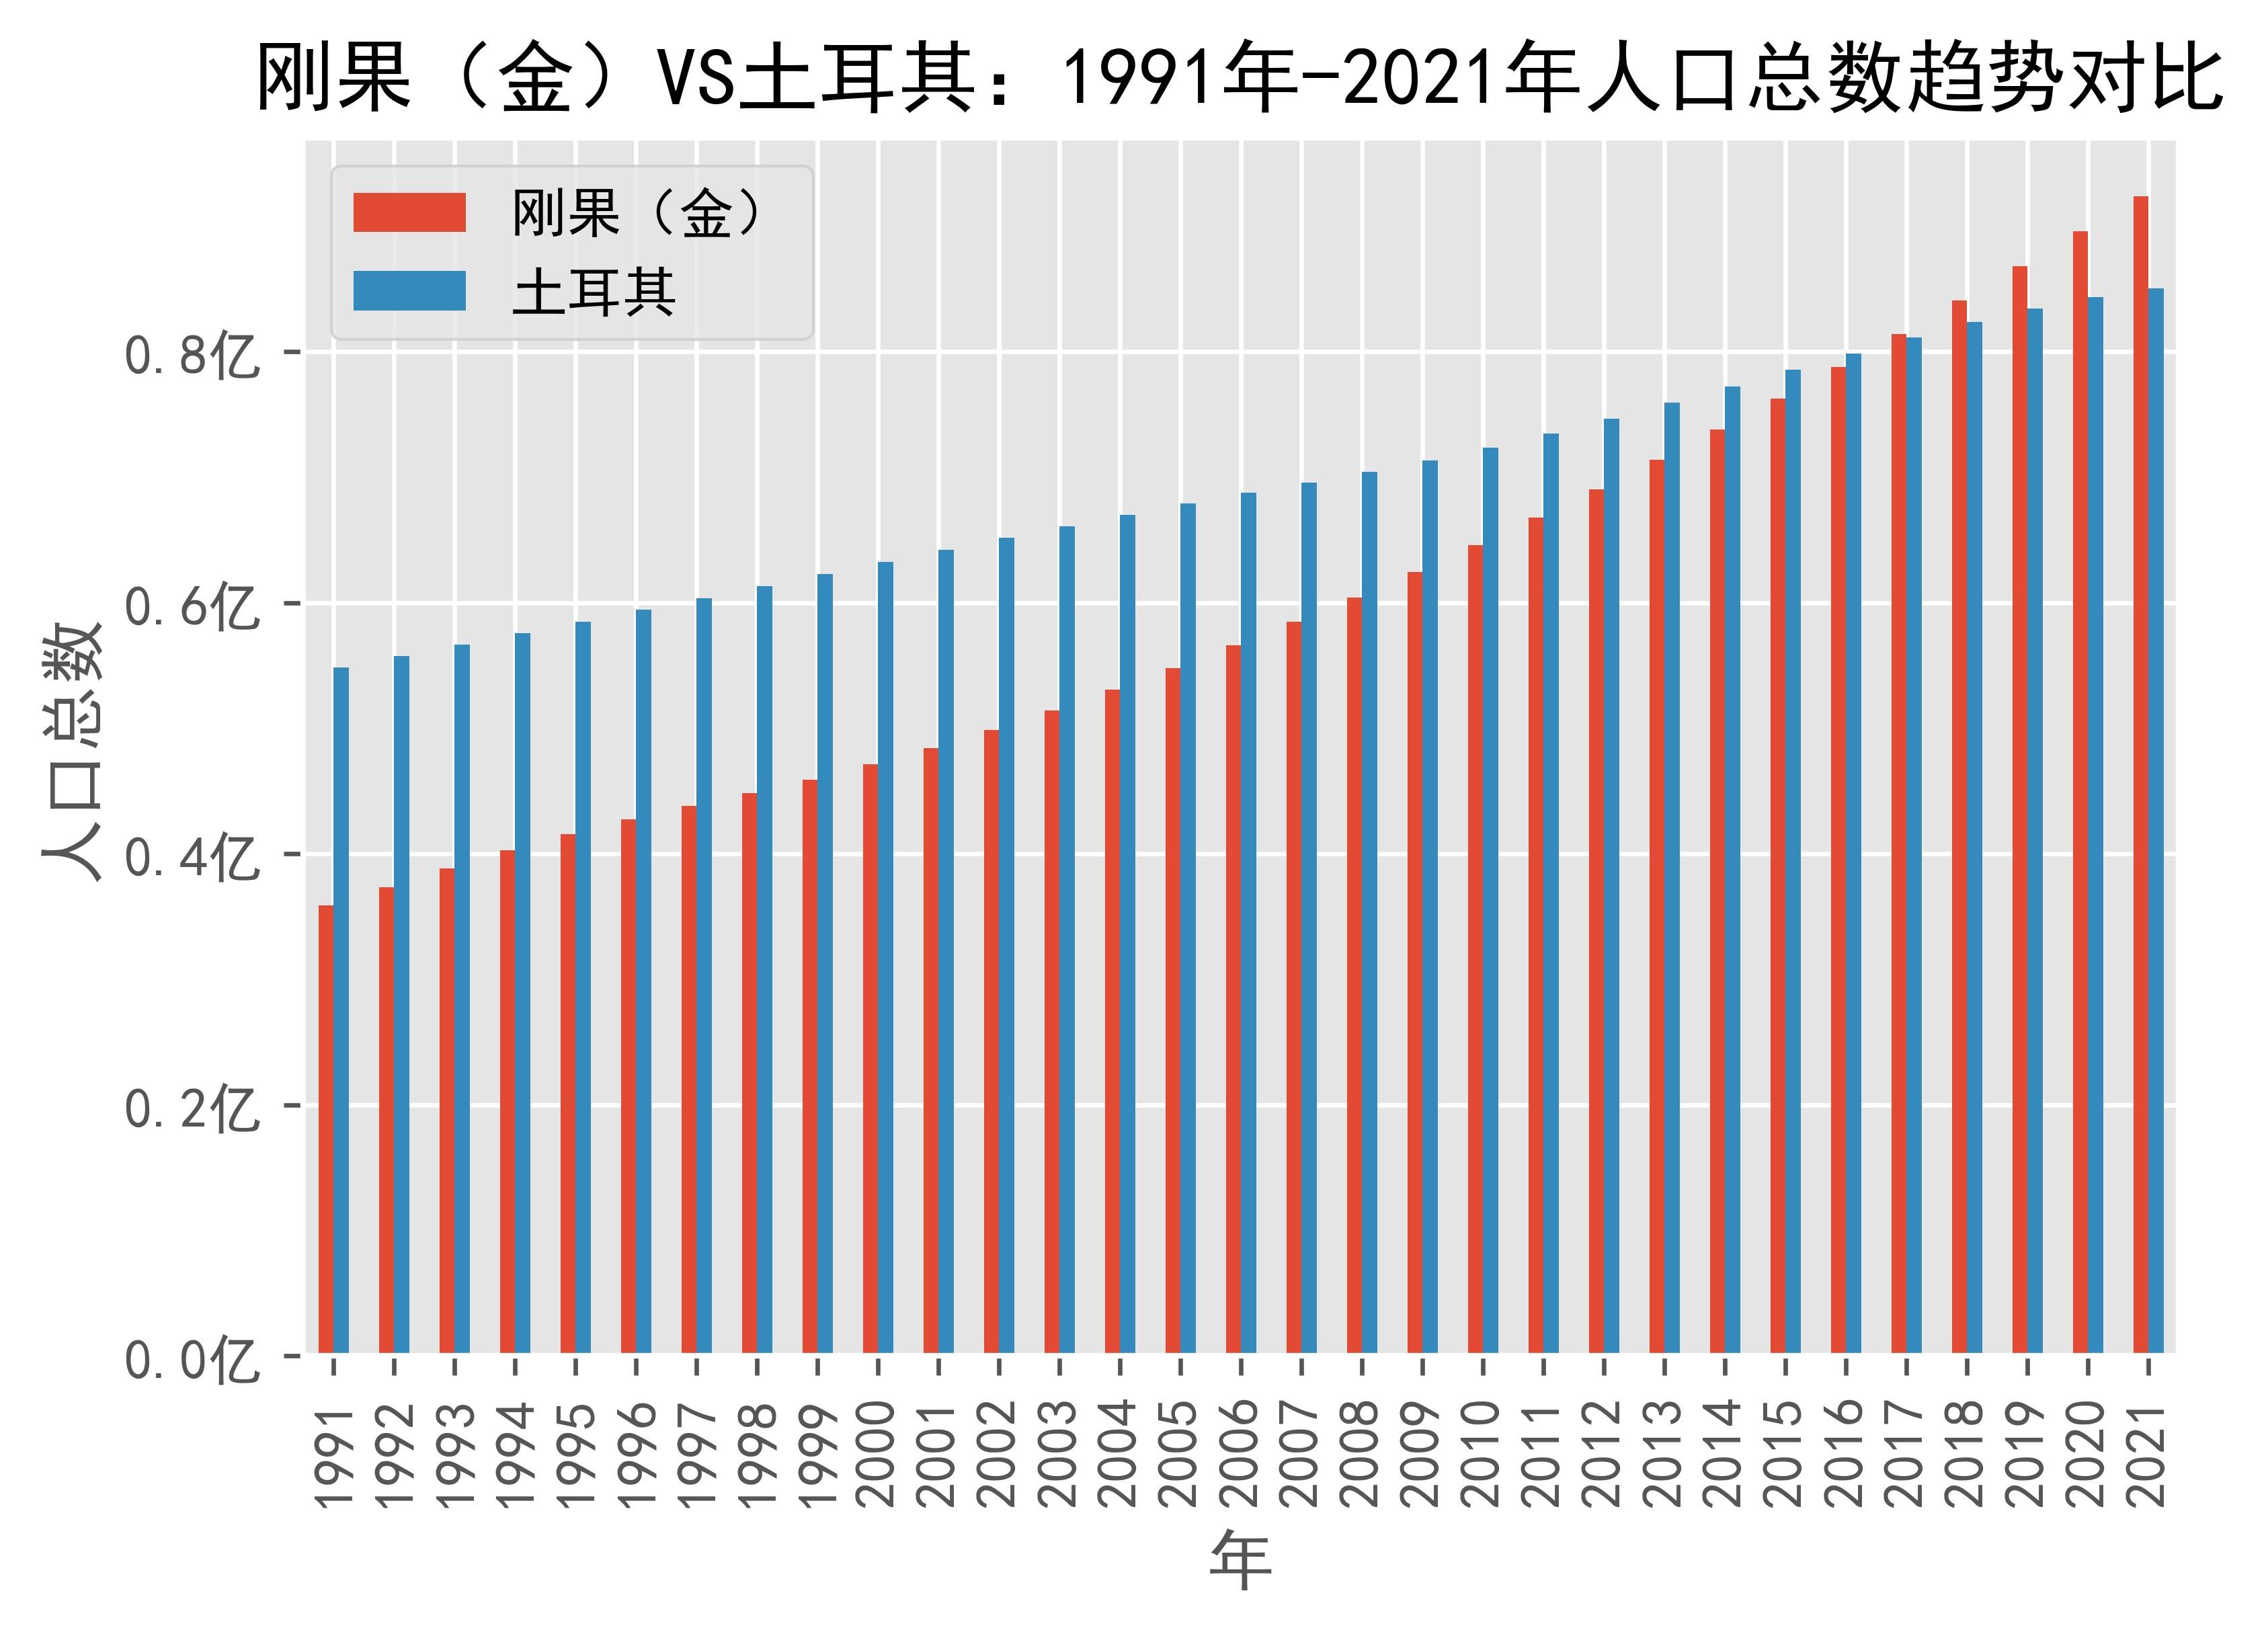 不丹VS土耳其人口增长率趋势对比(1991年-2021年)_数据_Turkiye_Bhutan